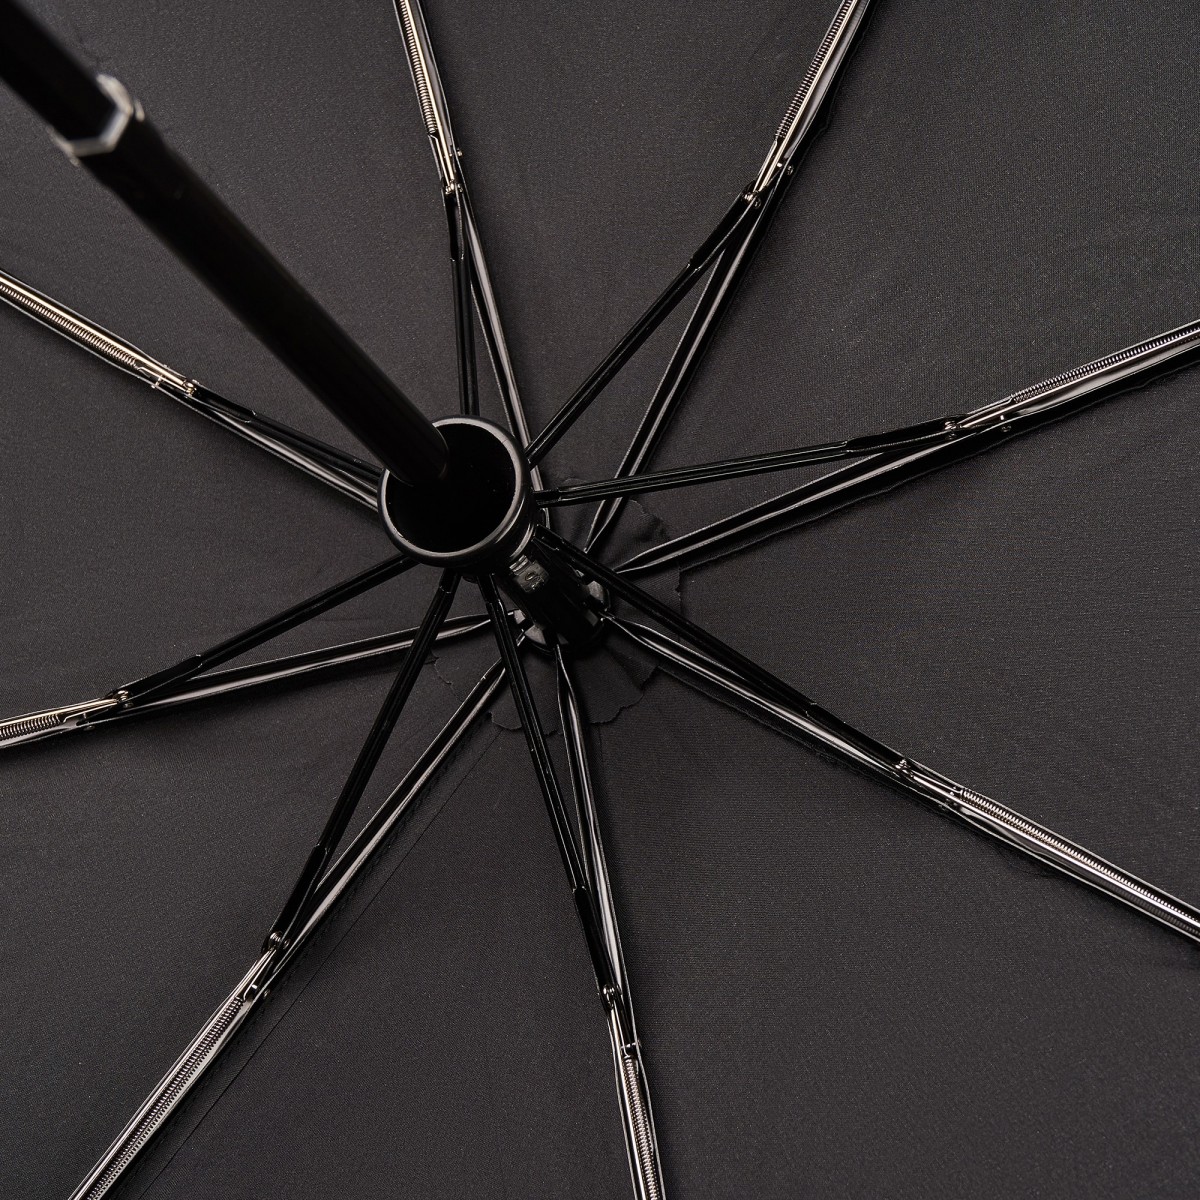 Зонт складной мужской Henry Backer M4580 Black